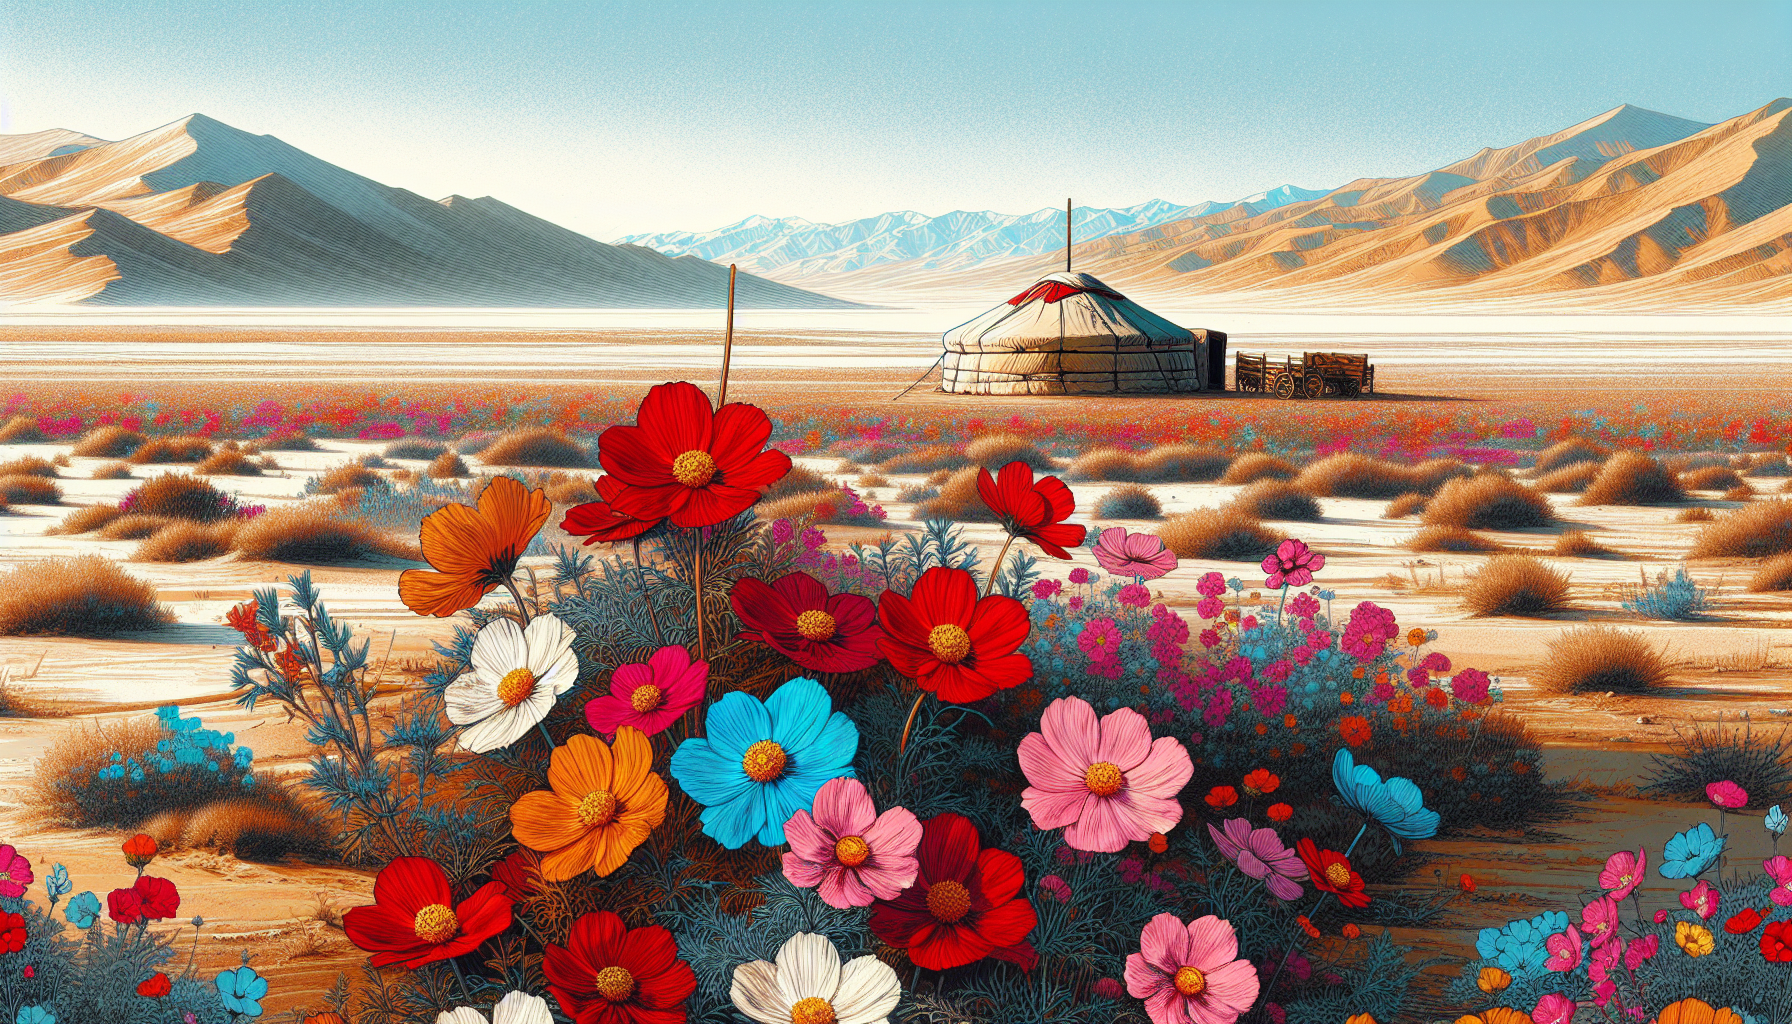 Mongolia in summer: blooming flowers and Gobi Desert